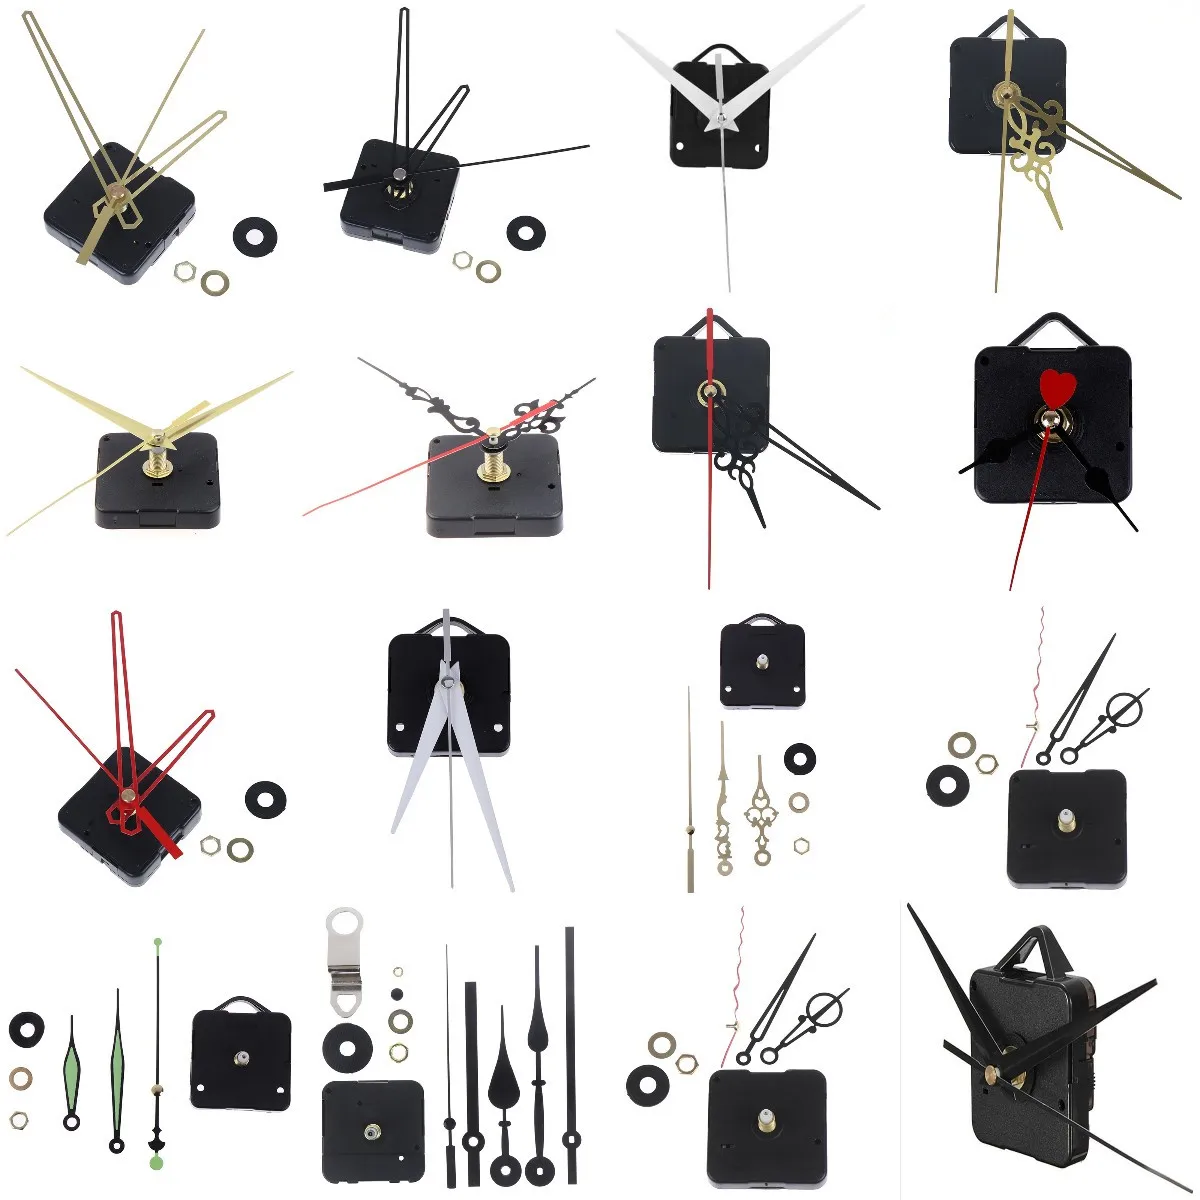 Tanio 50 rodzajów kwarcowy mechanizm do naprawy zegarów sklep